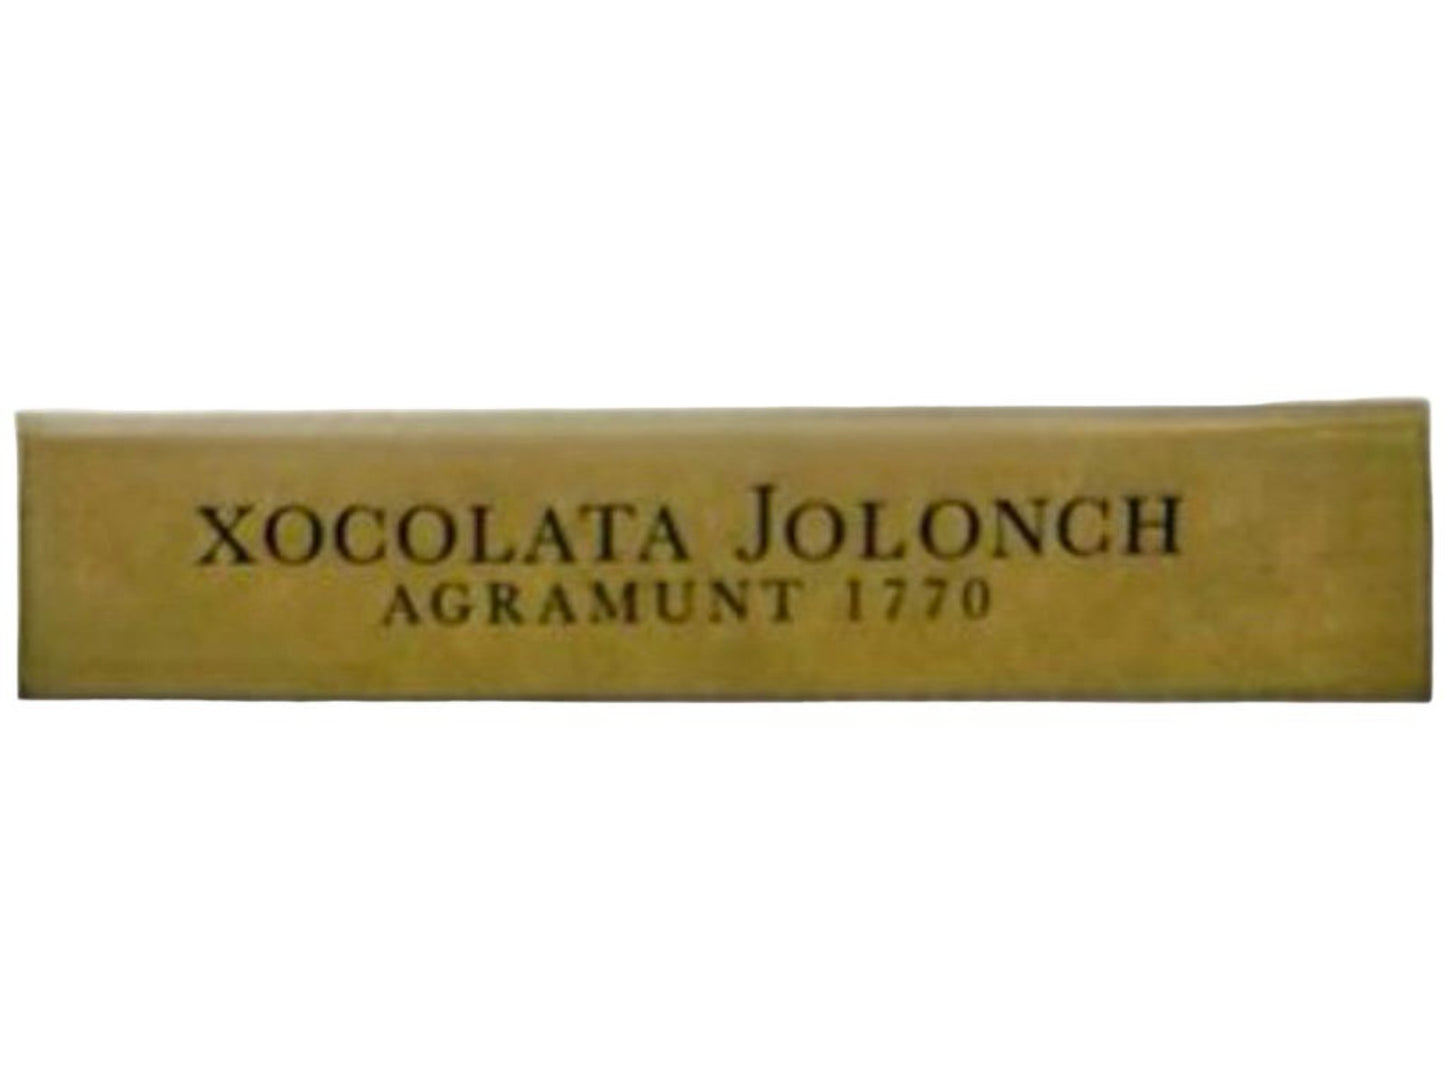 Vicens Xocolata Jolonch Chocolate Negro 60% Spanish 60% Dark Chocolate 100g Best Before November 2024